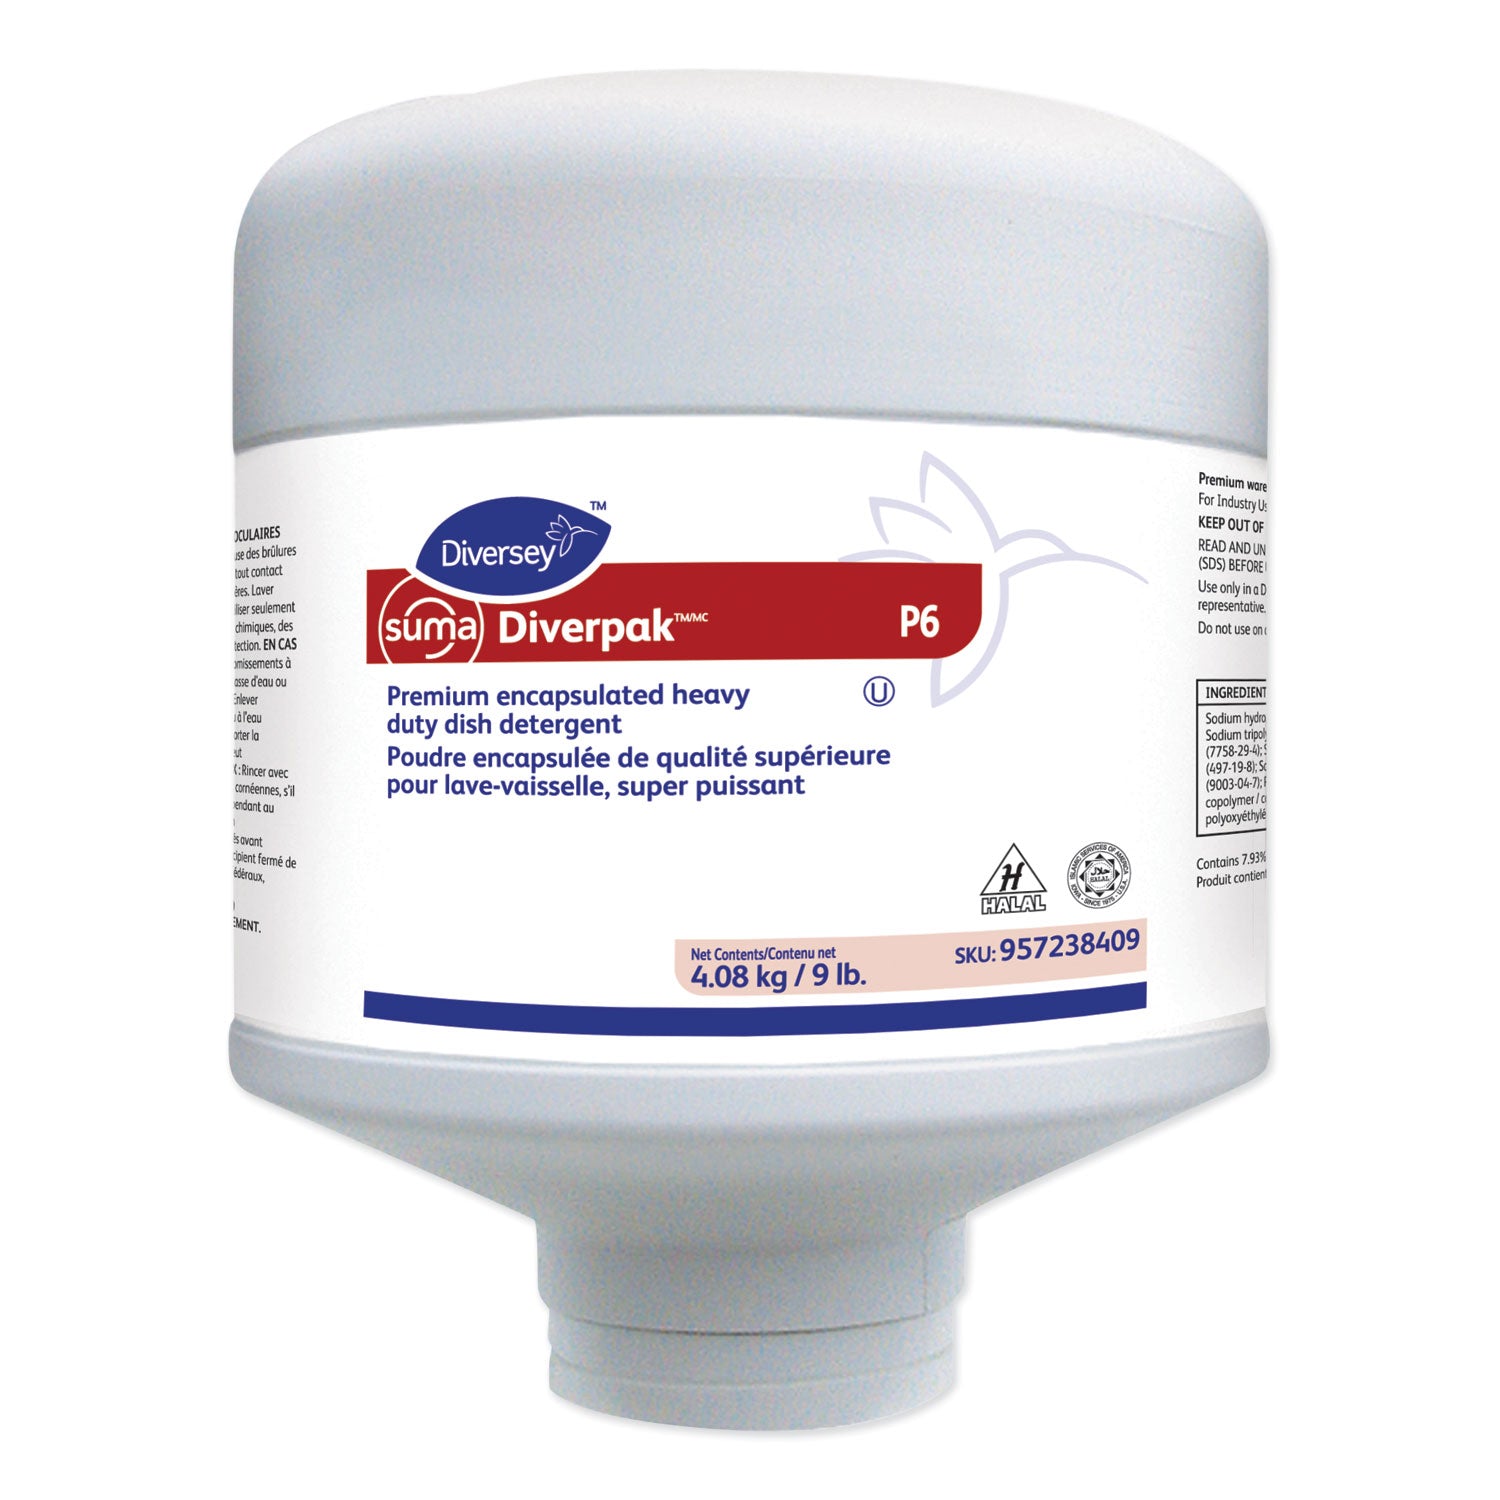 suma-diverpak-premium-encapsulated-heavy-duty-dish-detergent-9-lb-capsule_dvs957238409 - 1